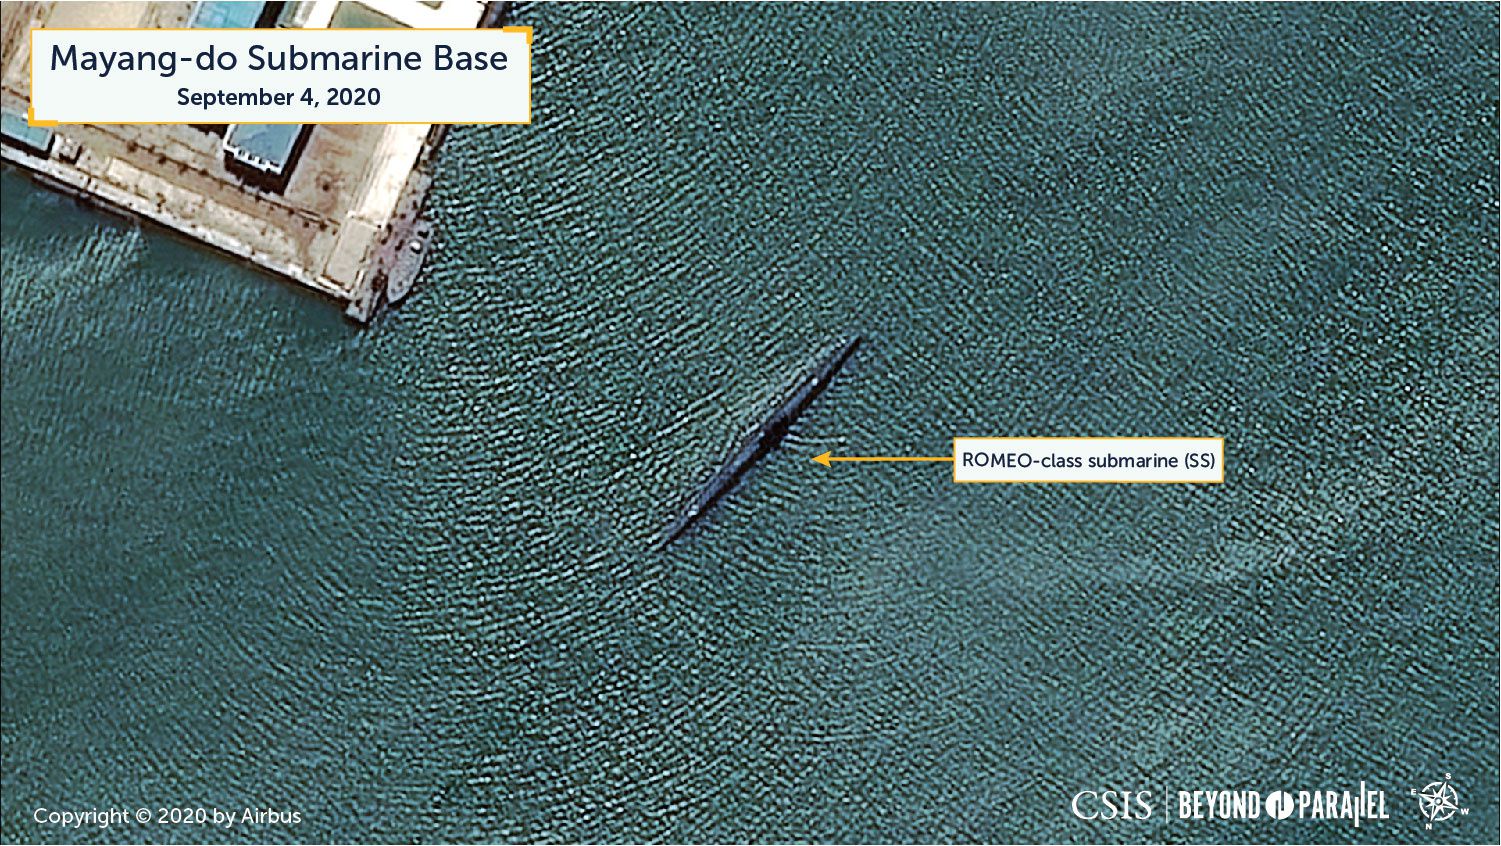 Uno de los submarinos de clase Romeo en la bahía de Mayang-do (CSIS/Reuters)